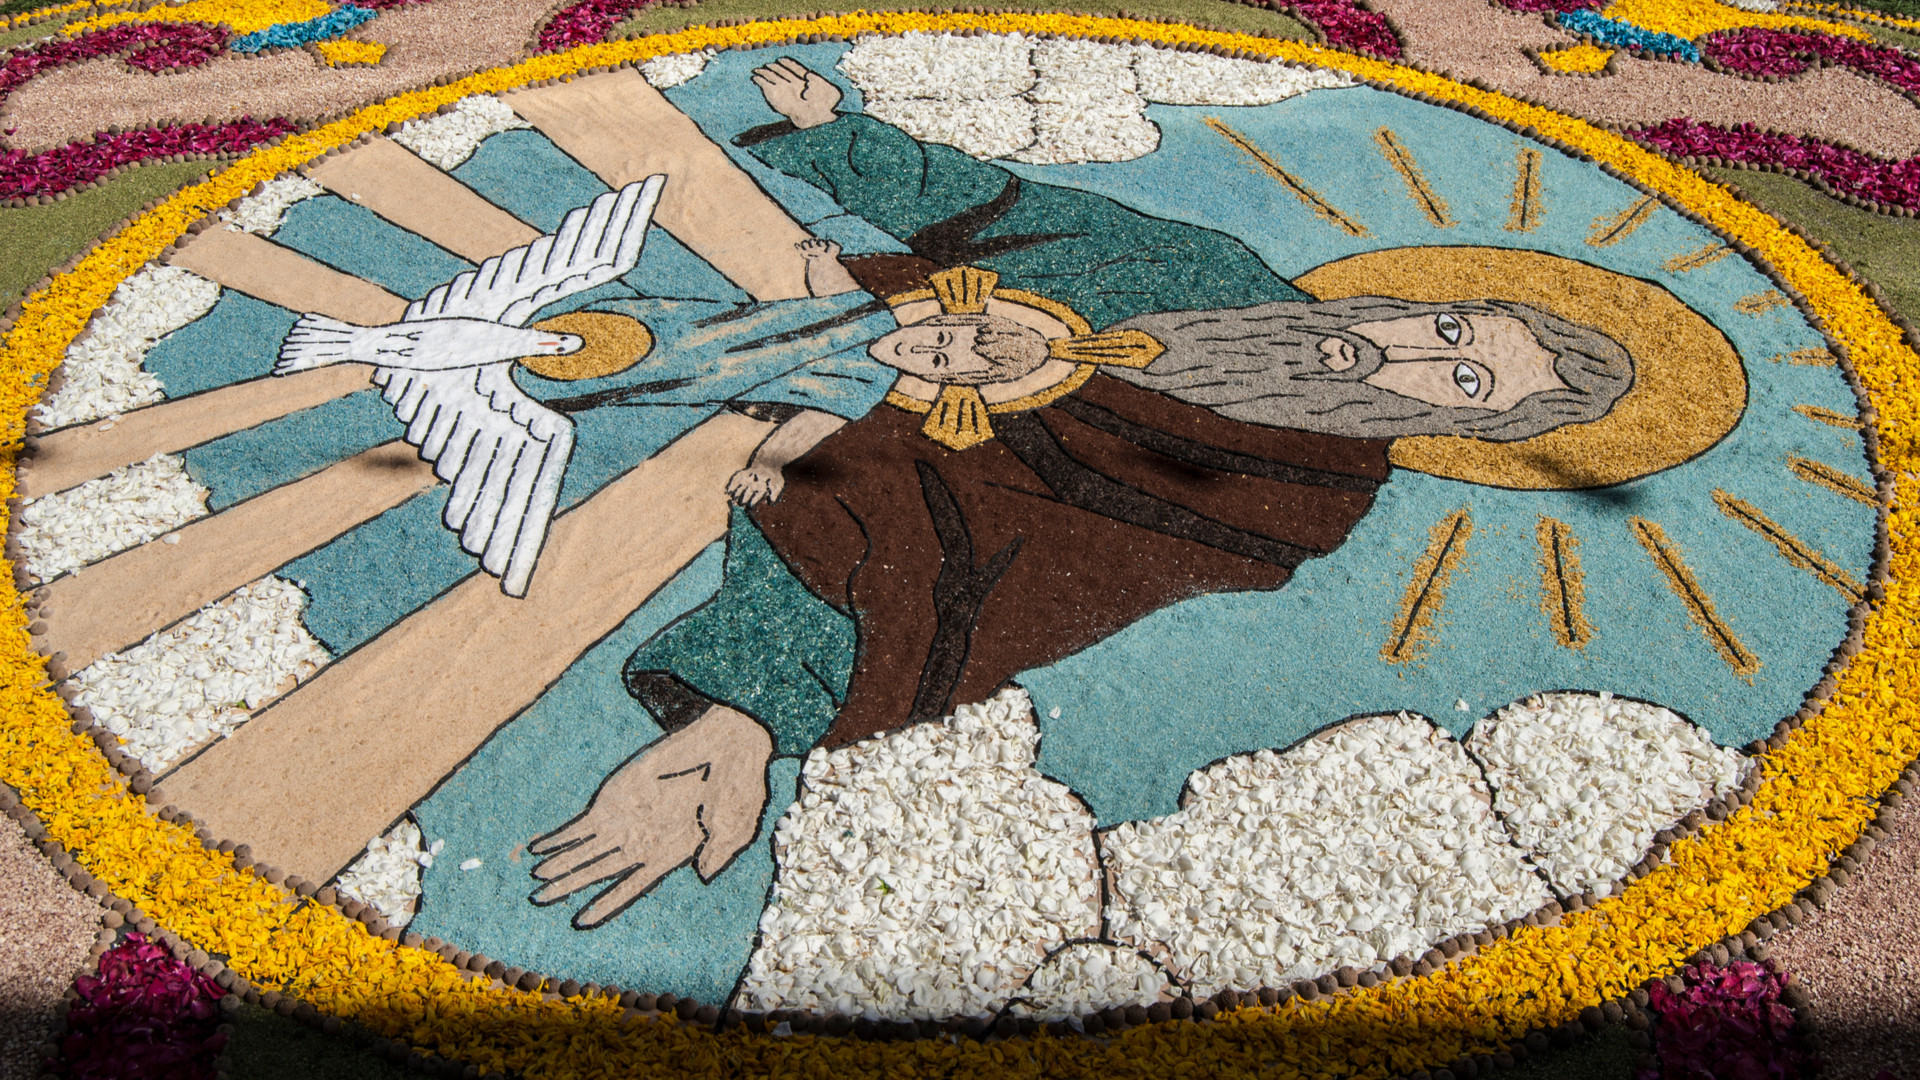 Detalle de una de las alfombras florales de Ponteareas (Pontevedra).